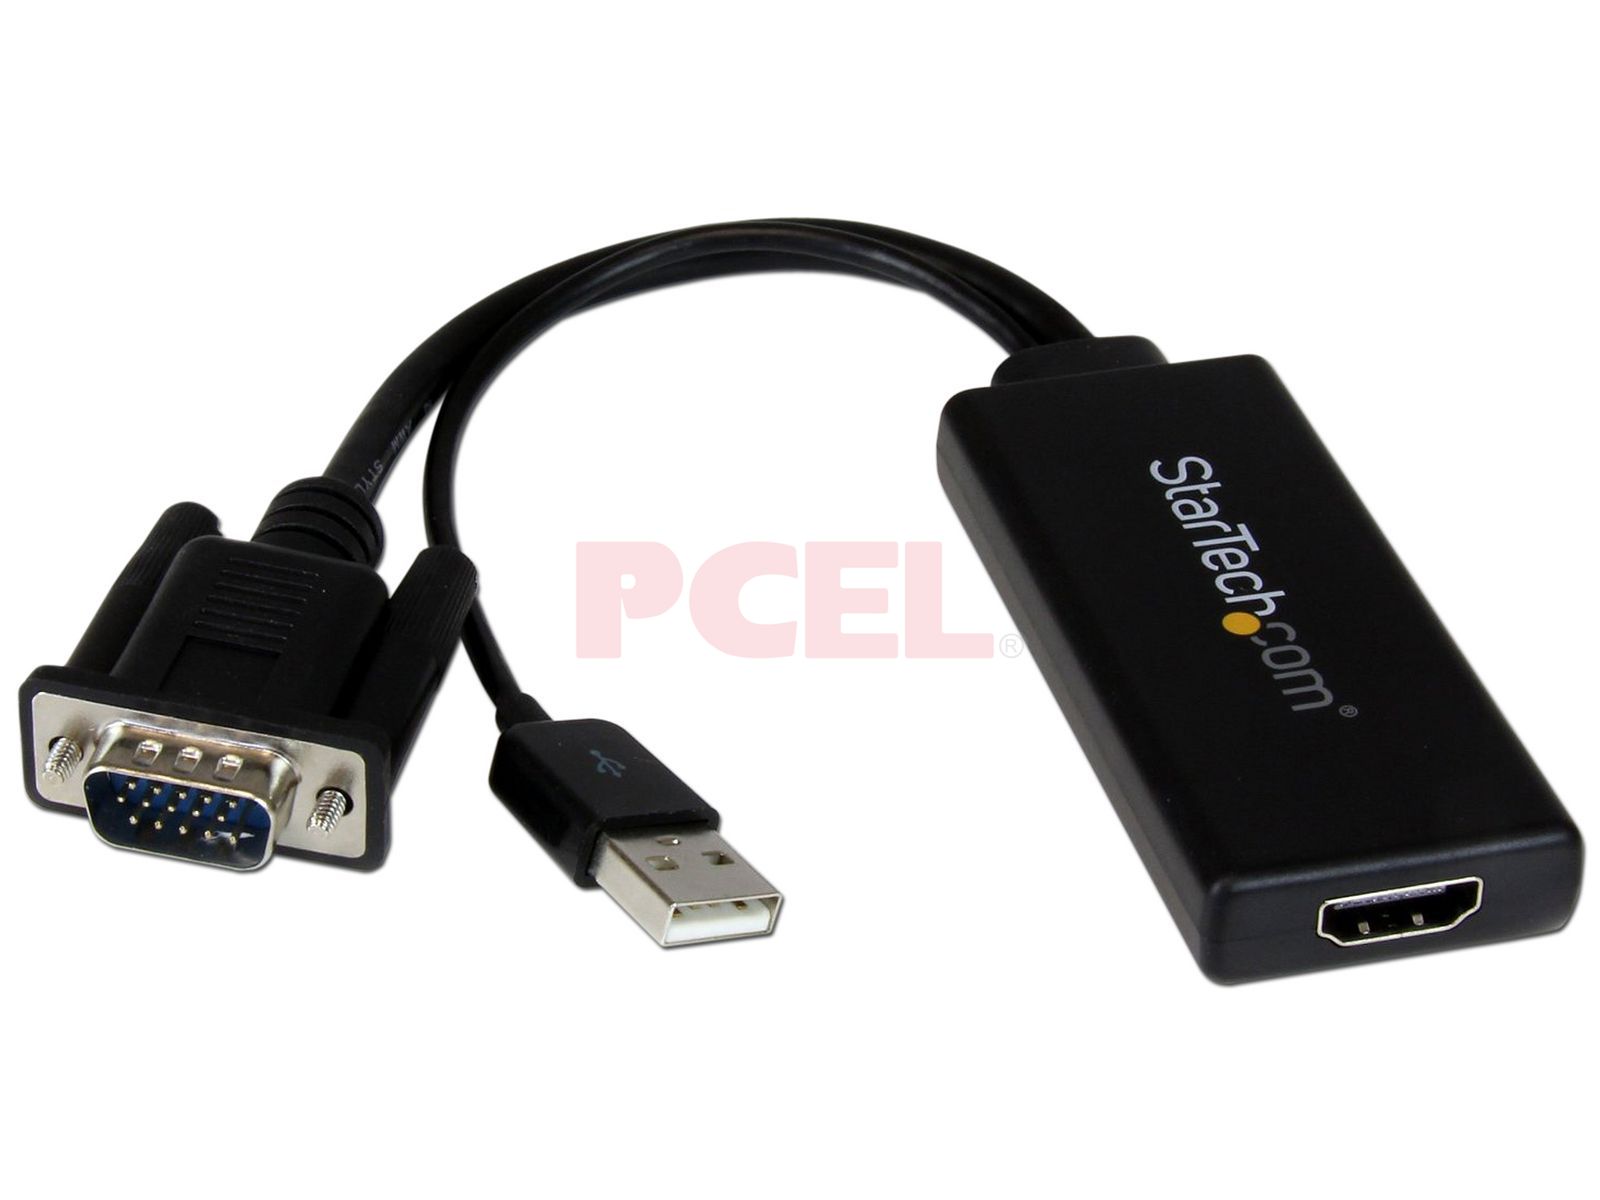 HDMI a VGA con adaptador de audio, adaptador VGA a HDMI chapado en oro,  convertidor de video 1080P macho a hembra con puerto de audio de 0.138 in  para